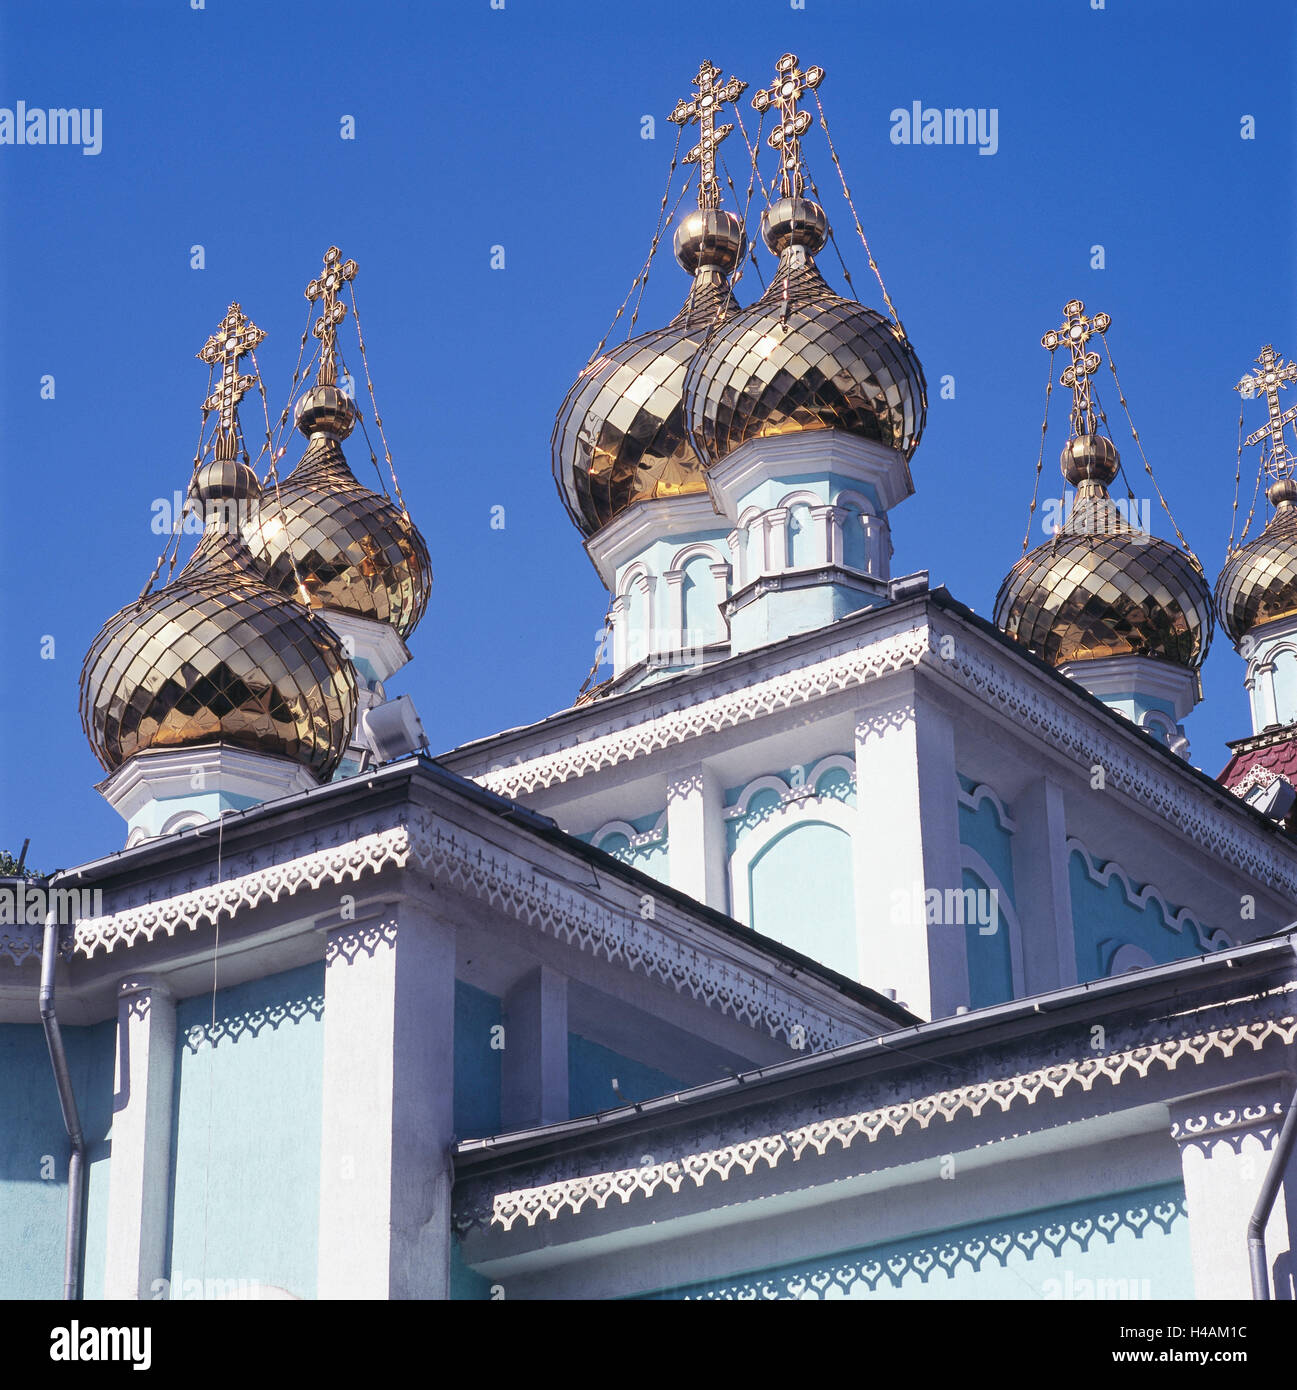 Il Kazakistan, Almaty, guglie, Golden, chiesa, fede, religione, cielo blu, croci, torri, nel 1909, Santa cattedrale chiesa russo-ortodossa, stile architettonico, Foto Stock